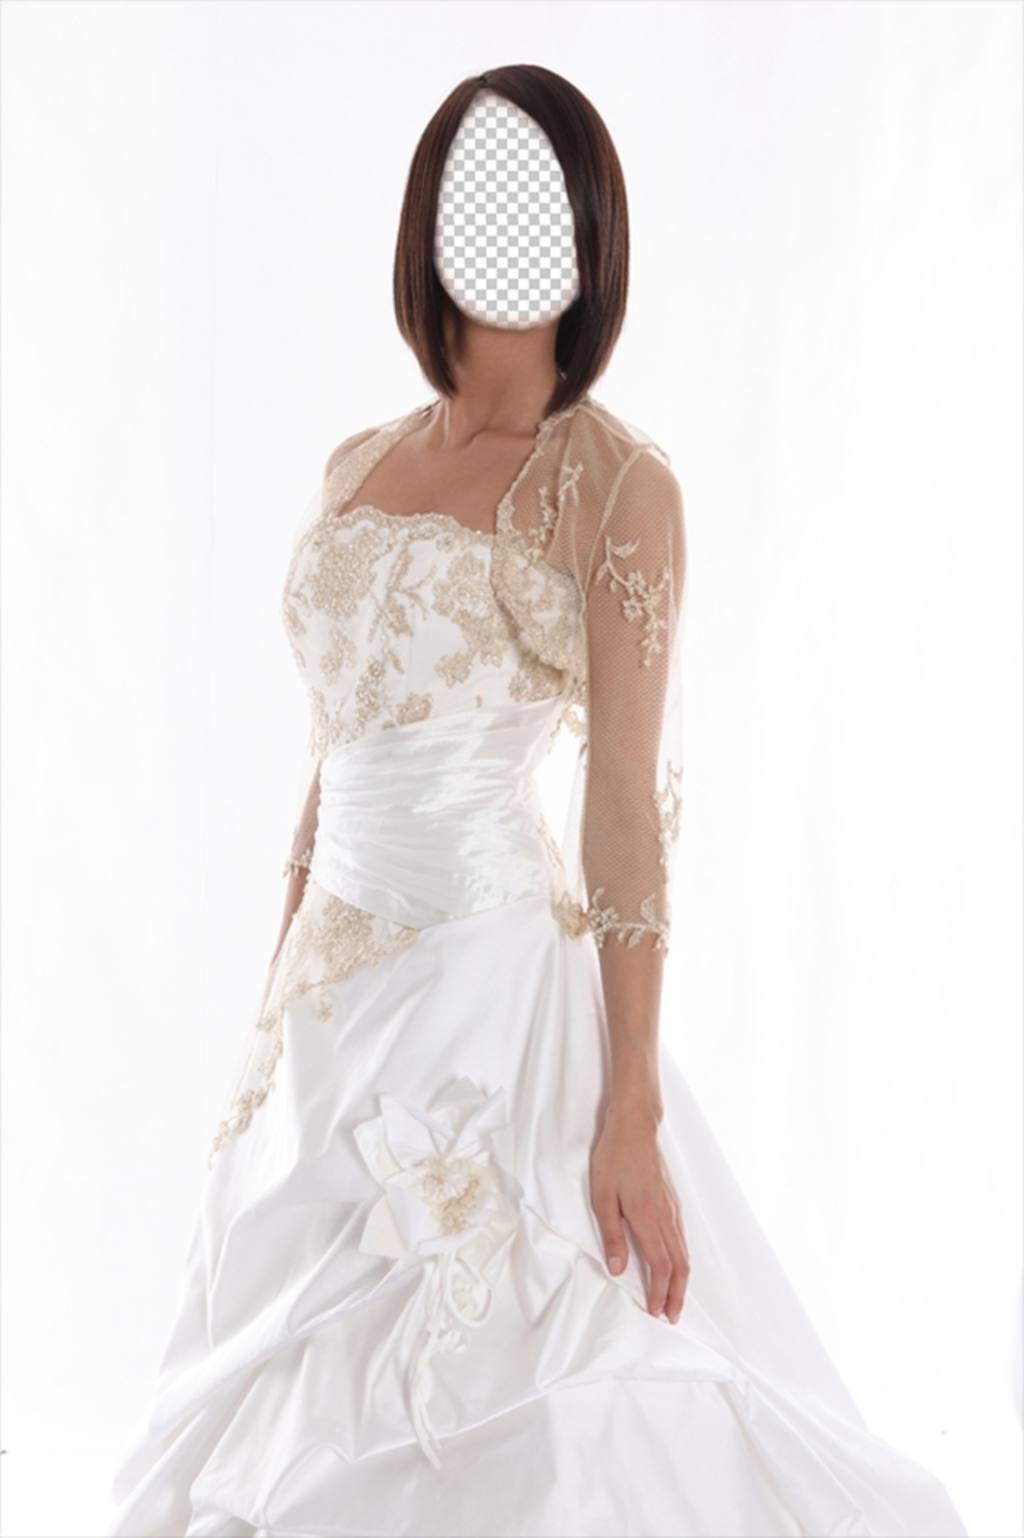 Fotomontage zu verkleiden sich als Braut mit braunen und kurzen Haaren ..